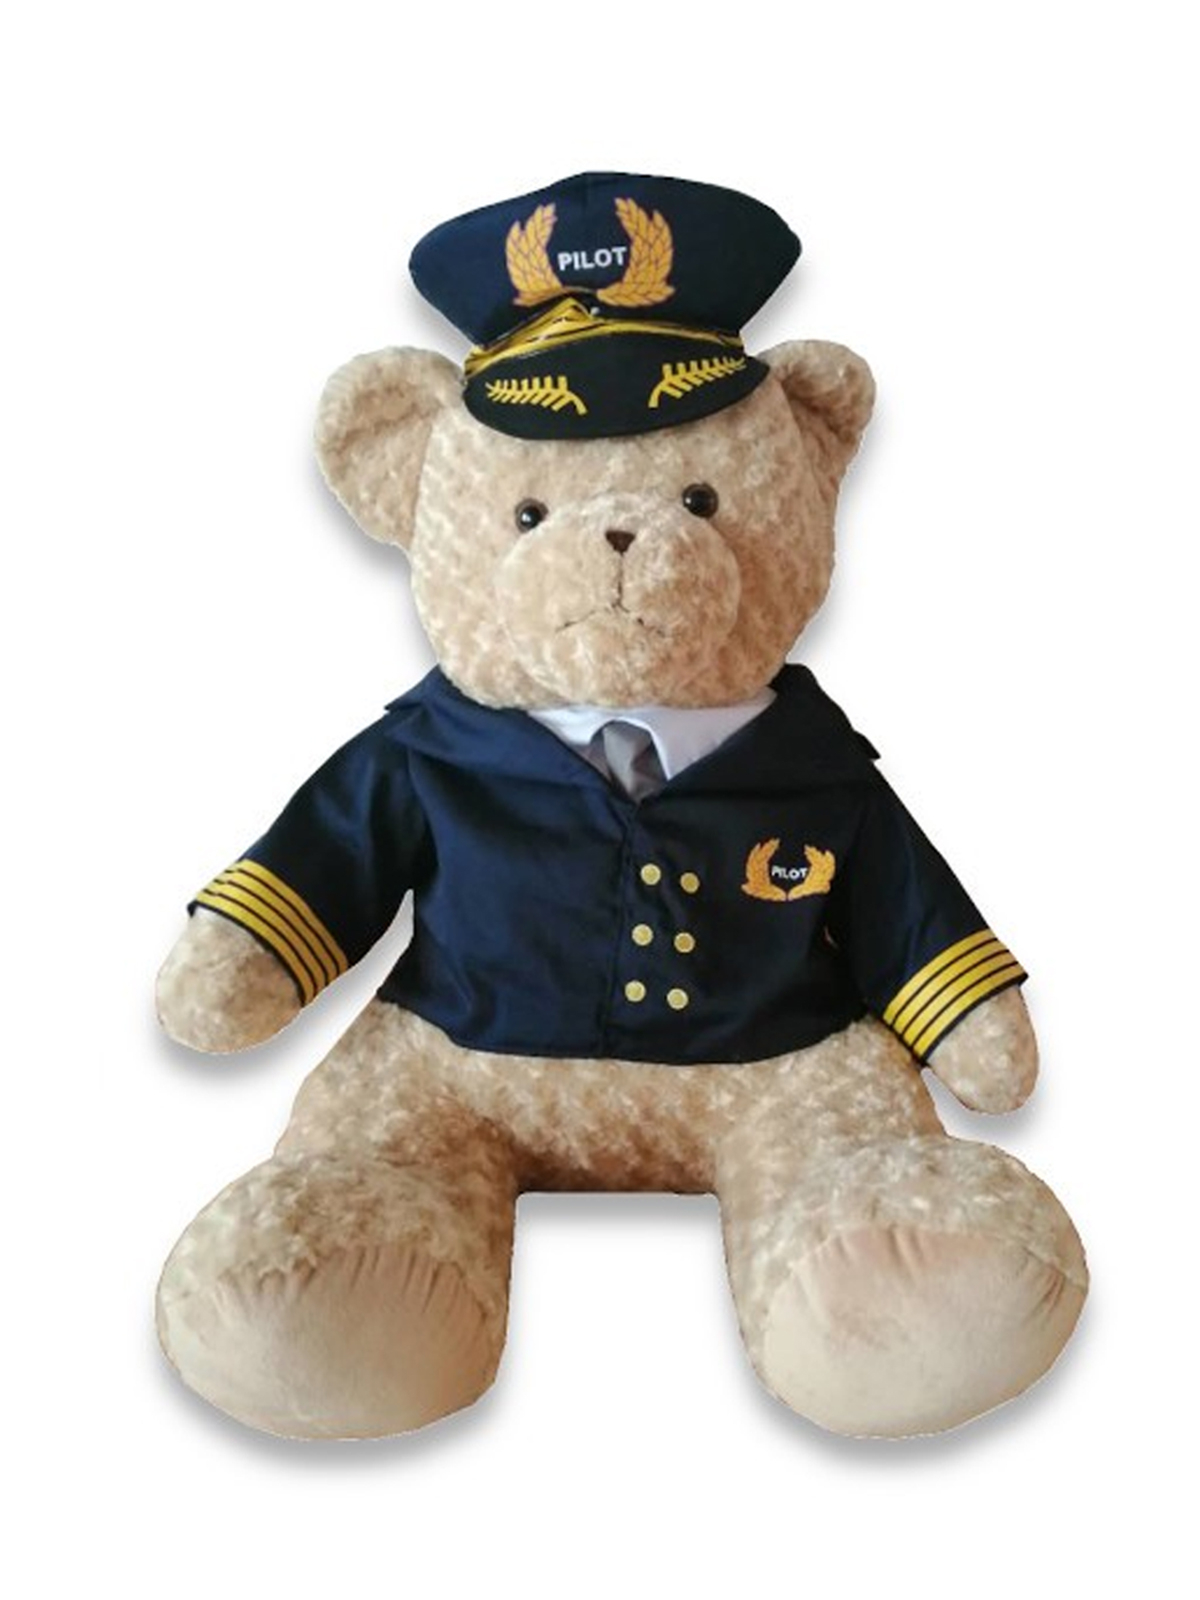 Medvěd pilot s uniformou a čepicí - cca 80 cm, plyšový